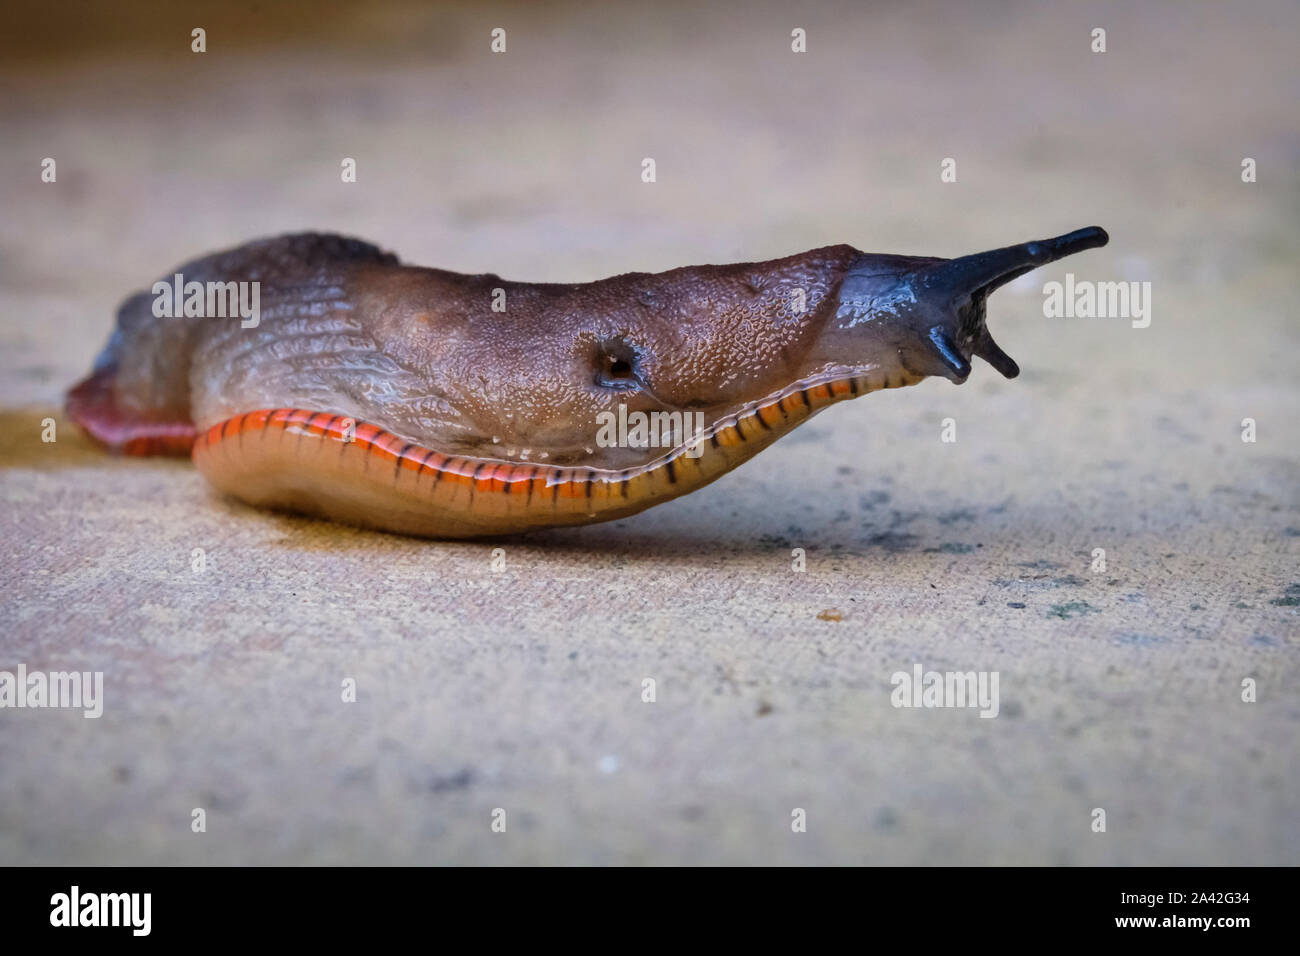 Eine Schnecke kriecht über eine Platte in einem Garten. Dies ist wahrscheinlich Arion ater der große schwarze Slug hier in ihrer braunen Form gesehen. Stockfoto